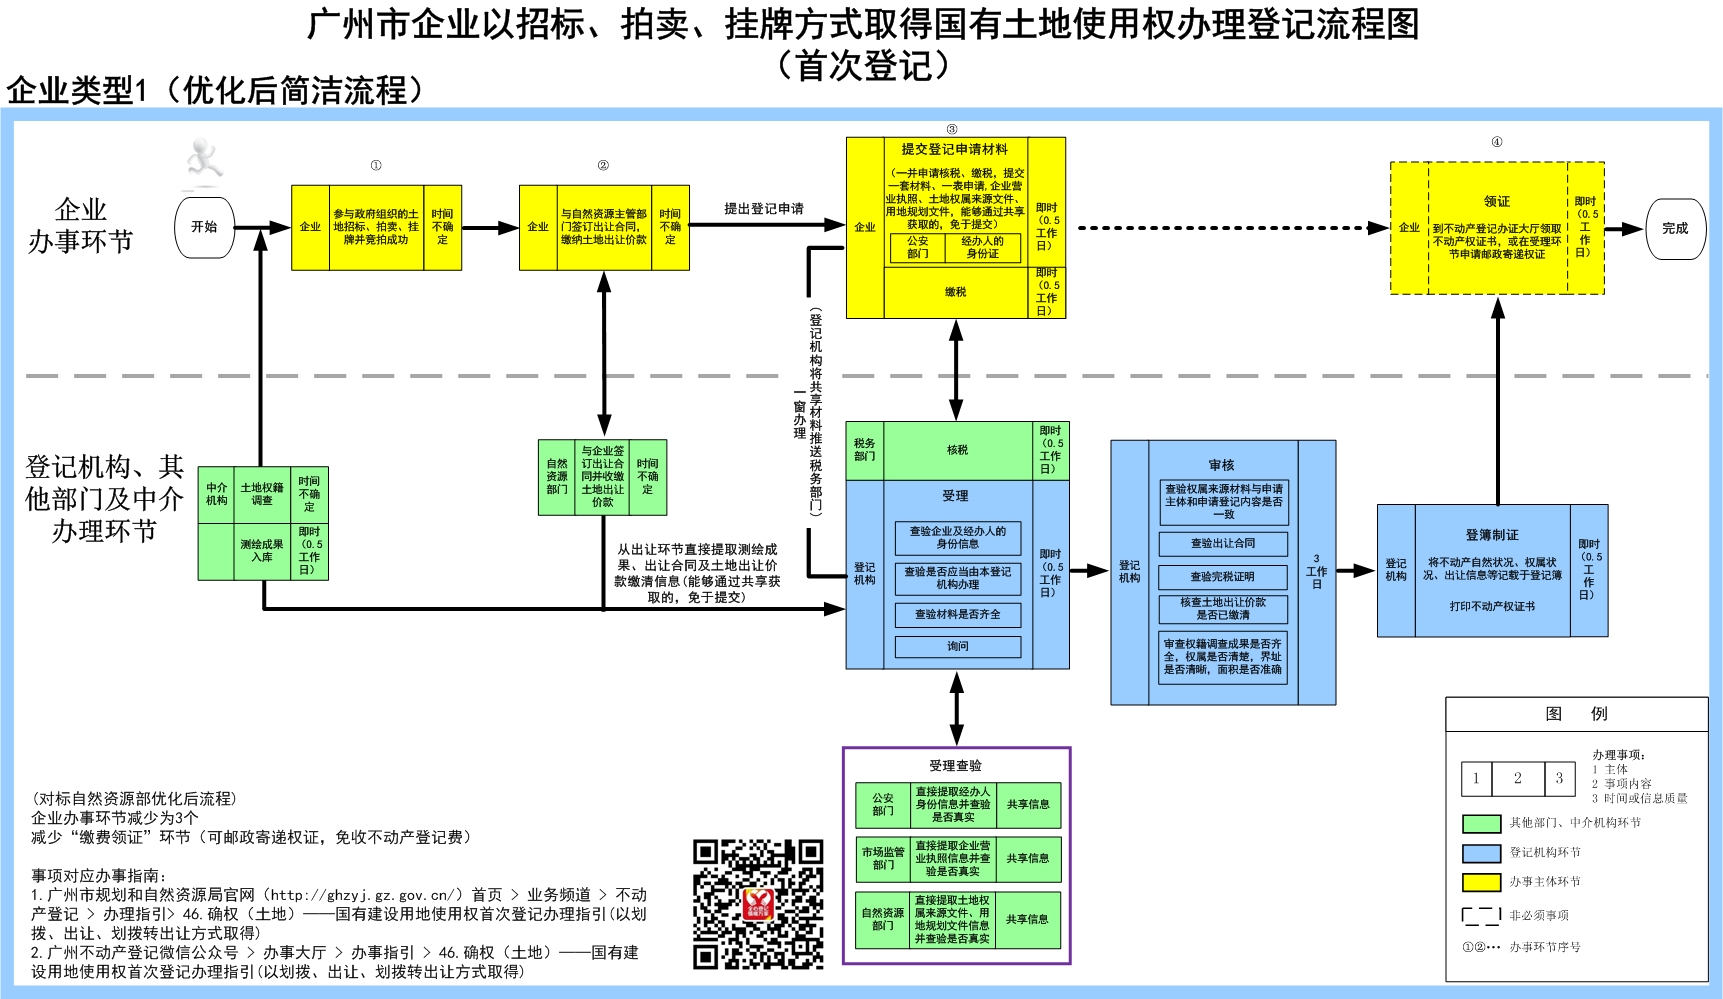 1企业以招标、拍卖、挂牌方式取得国有土地使用权办理登记流程图（首次登记）-广州市.jpg